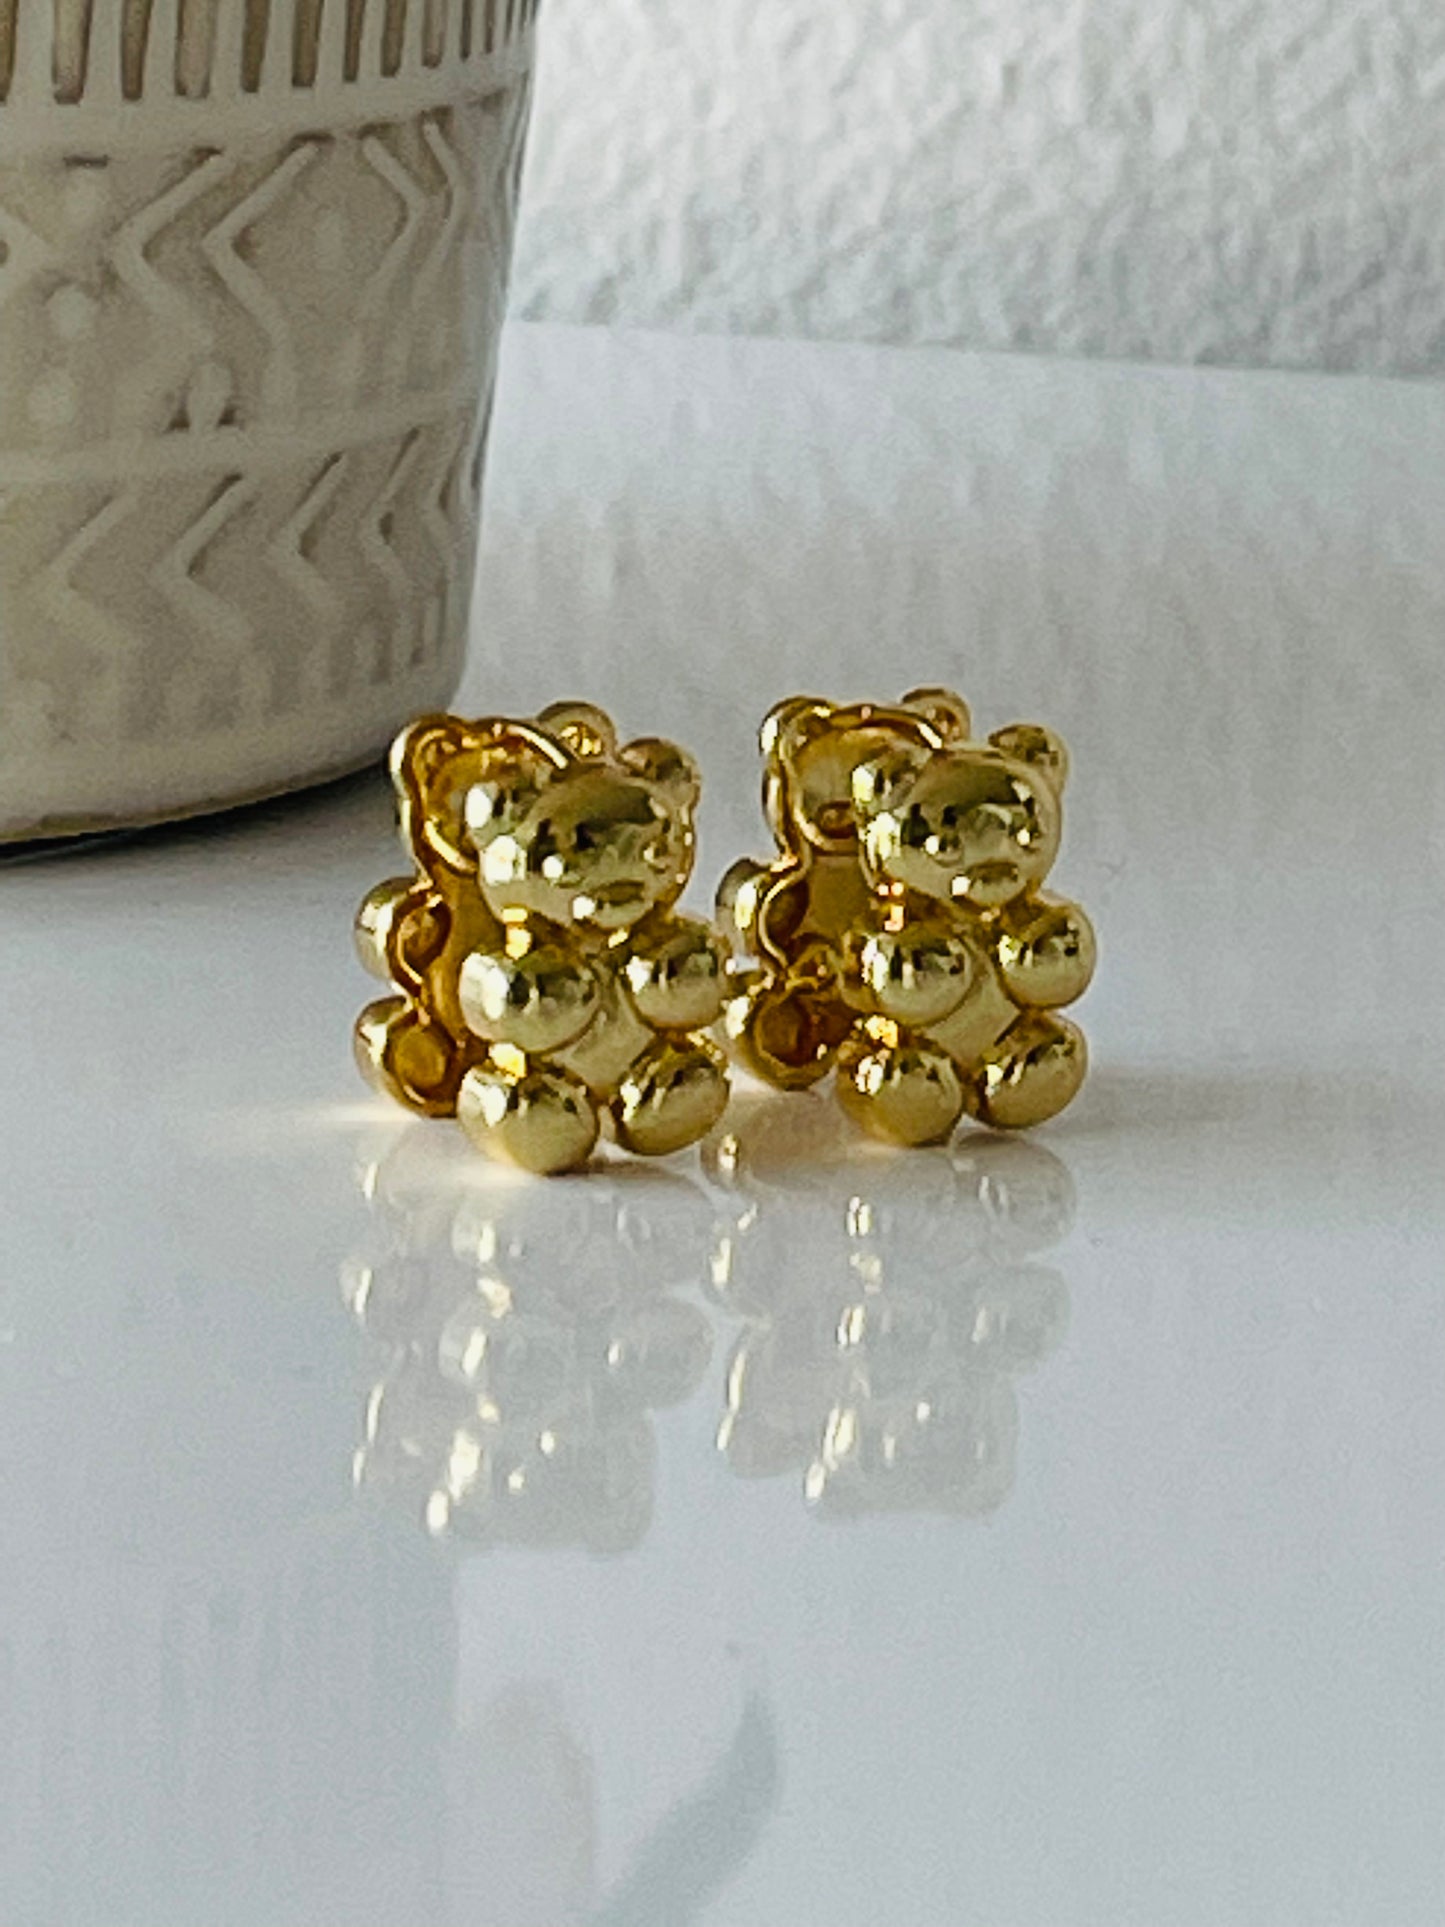 Bear earrings